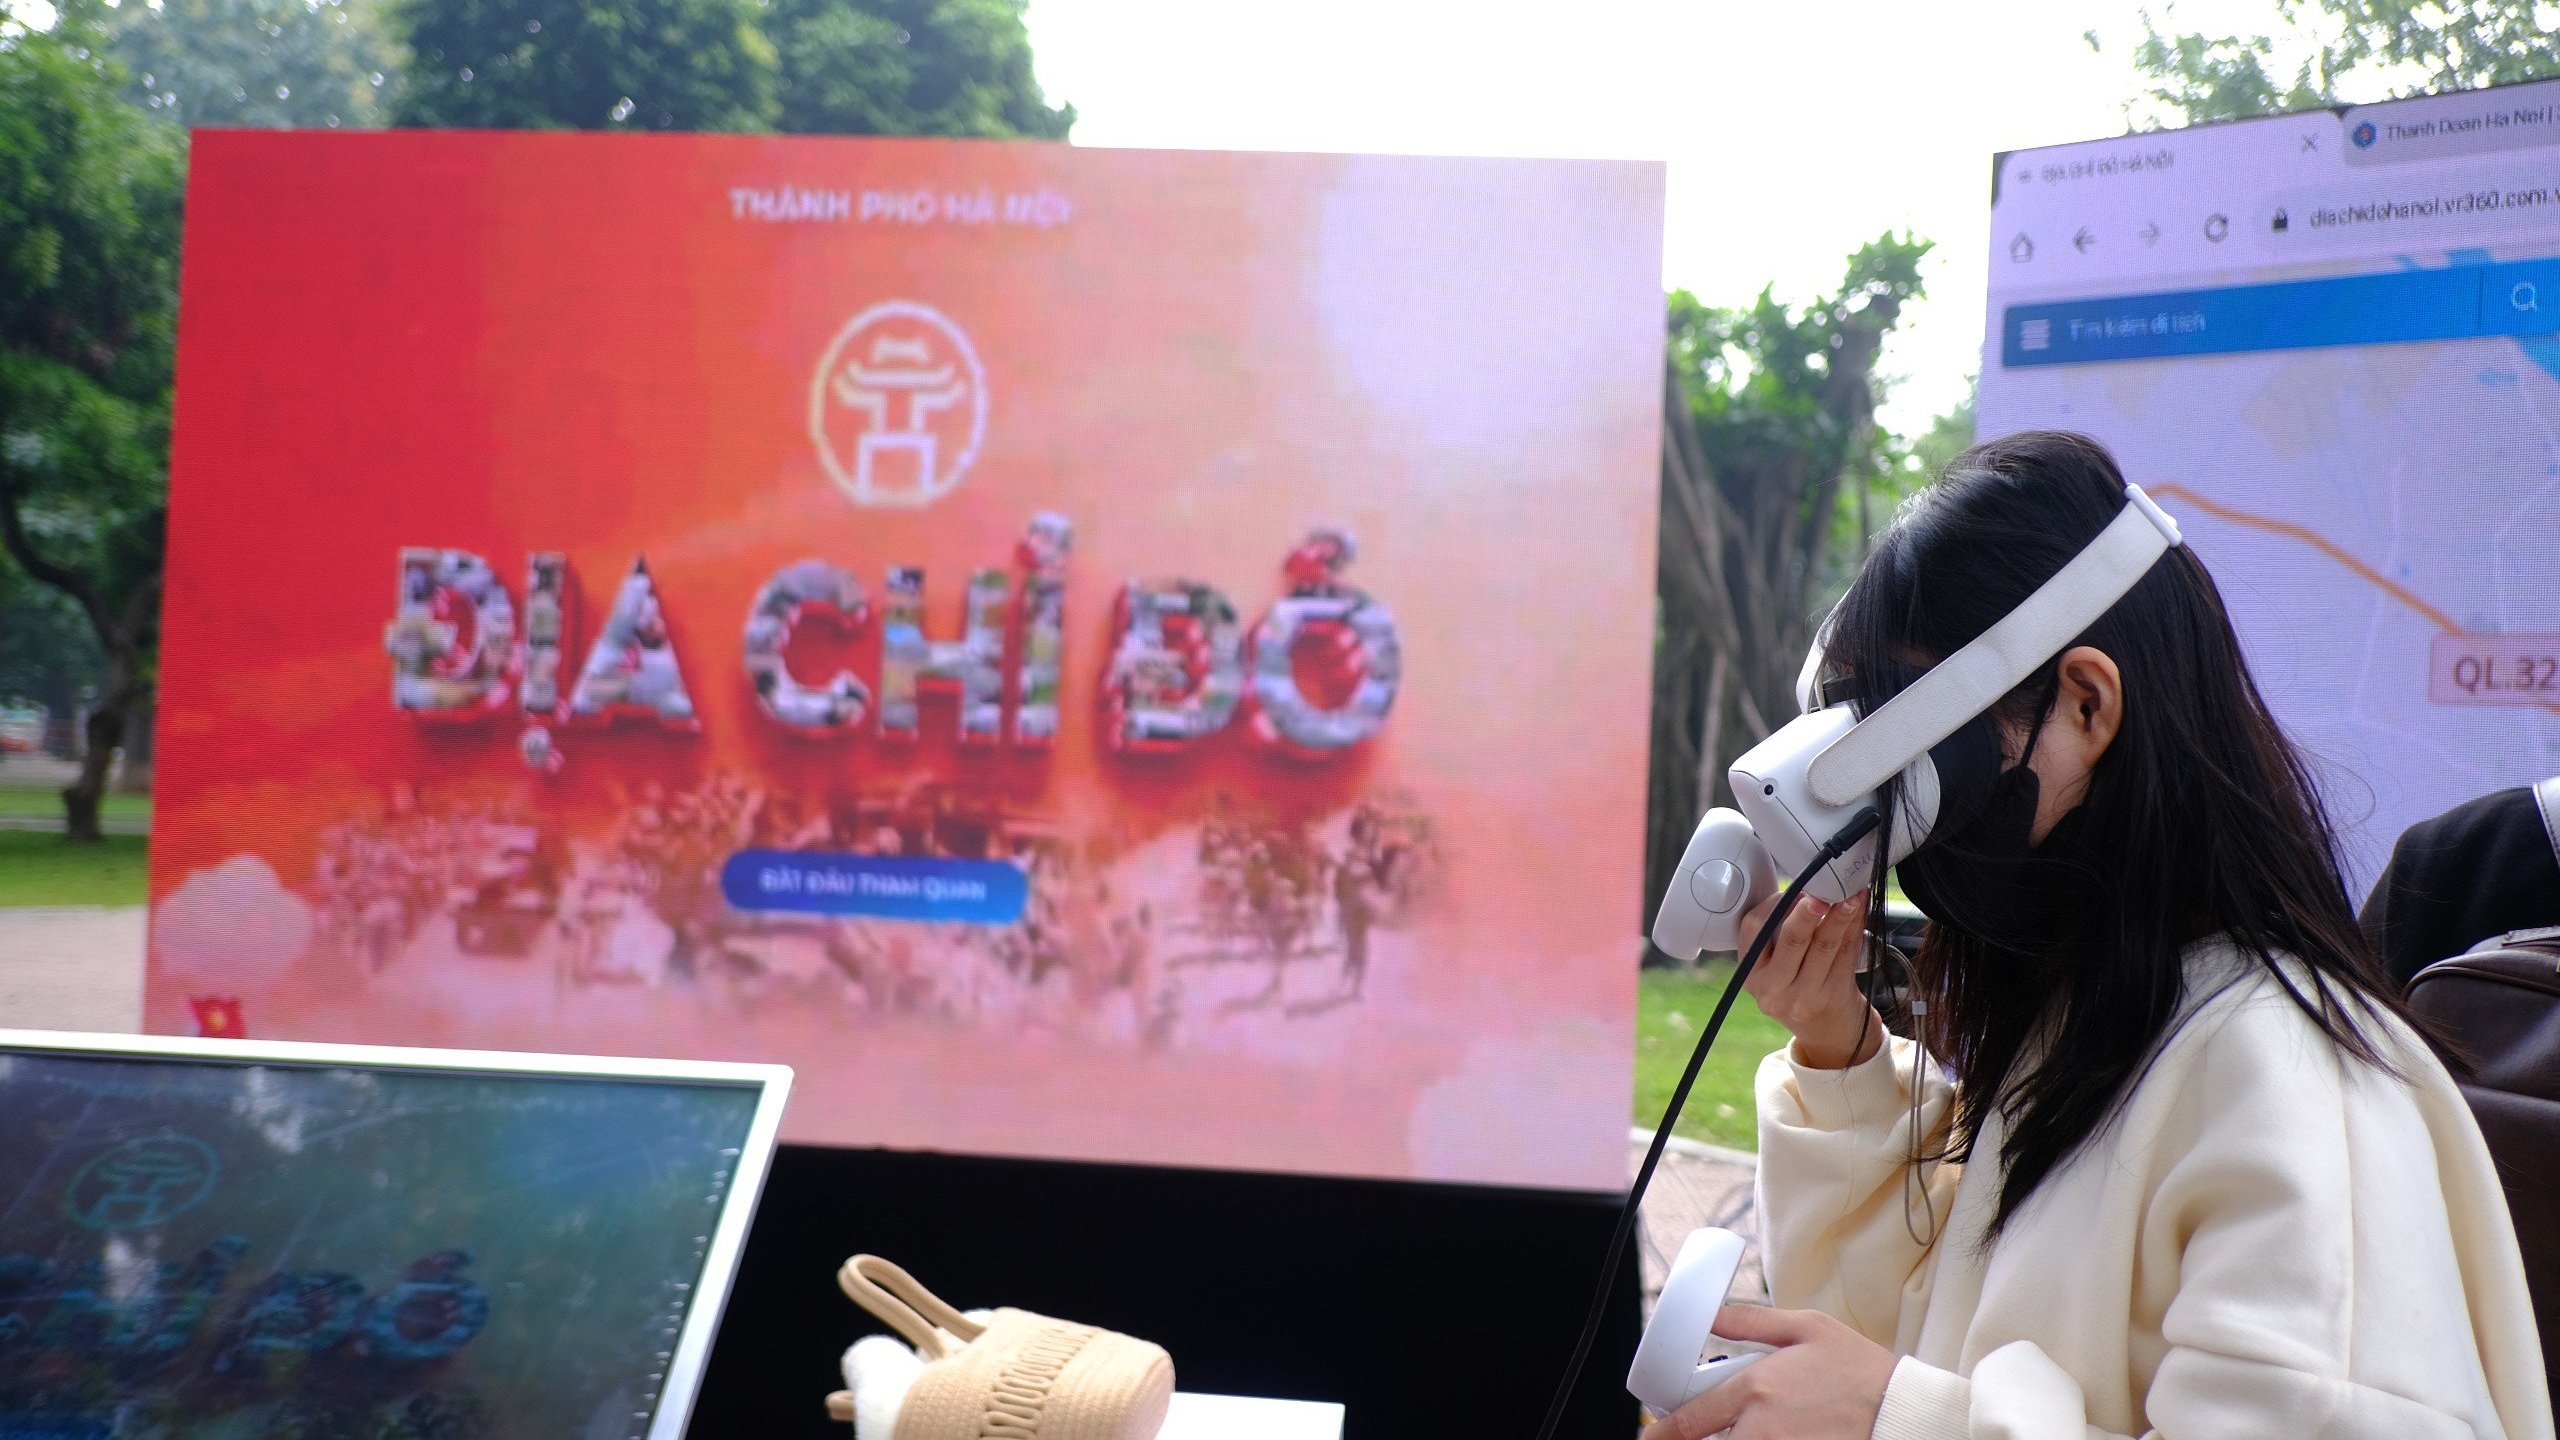 Giới trẻ hào hứng trải nghiệm thực tế ảo "địa chỉ đỏ" tại Hà Nội